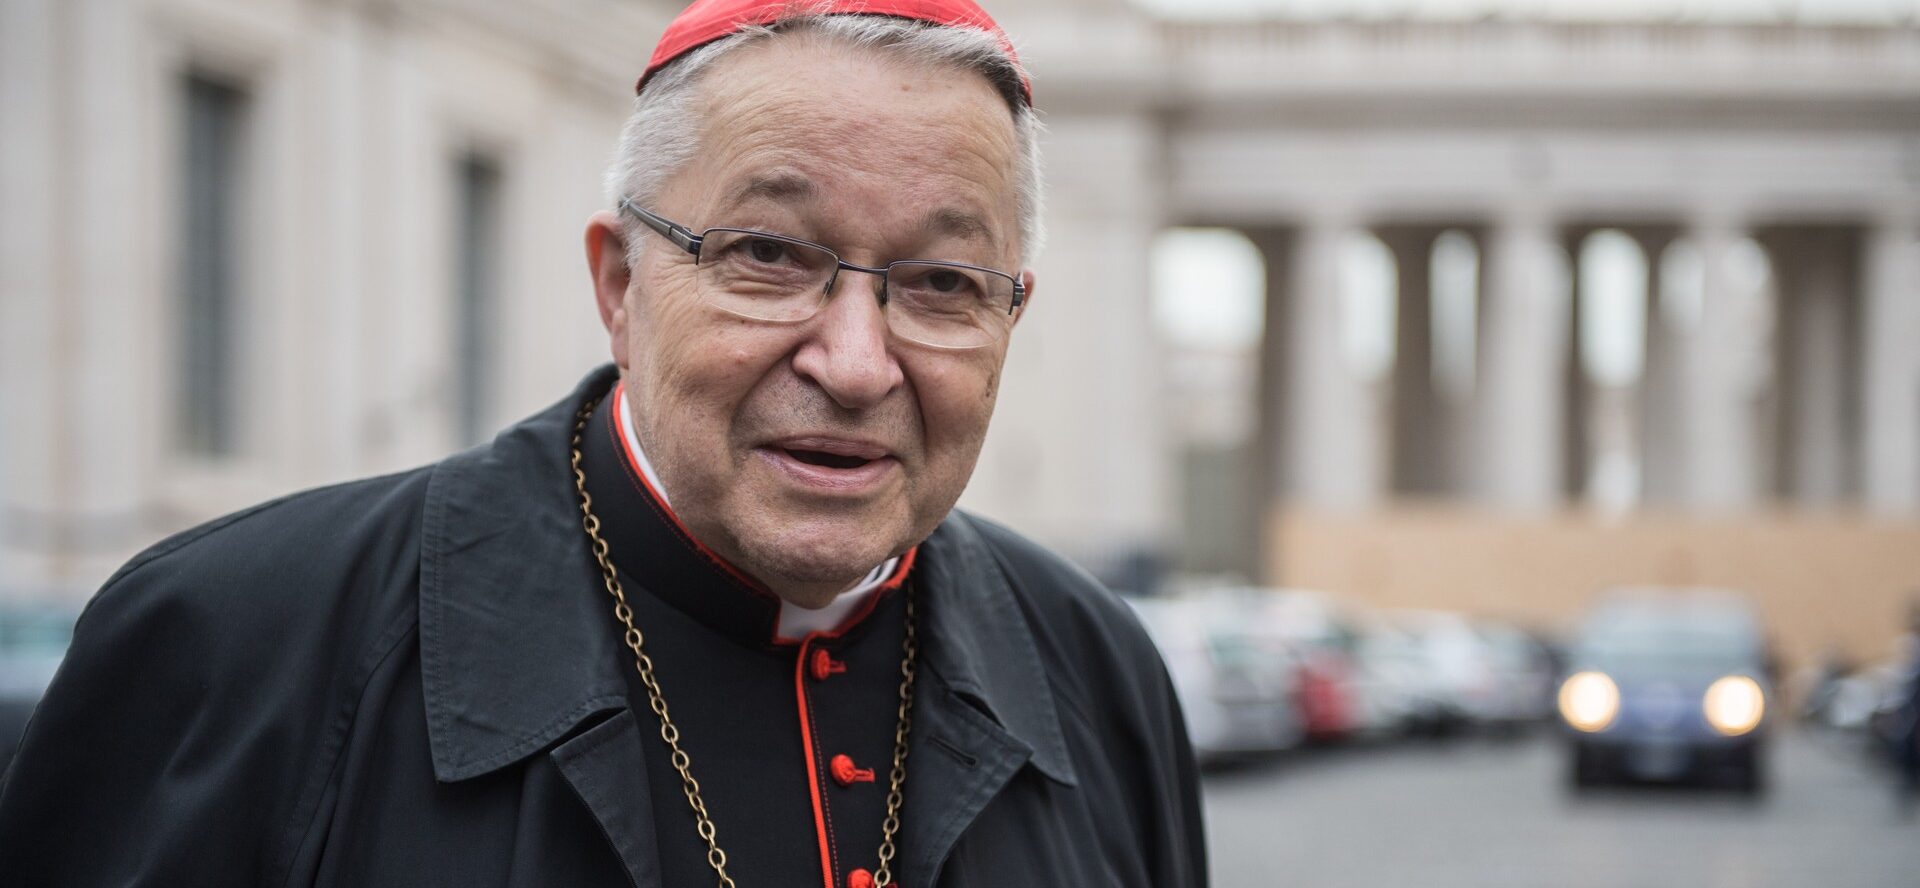 Le cardinal André Vingt-Trois a été archevêque de Paris de 2005 à 2017 | © Catholic Church of England and Wales CC BY-NC-SA 2.0